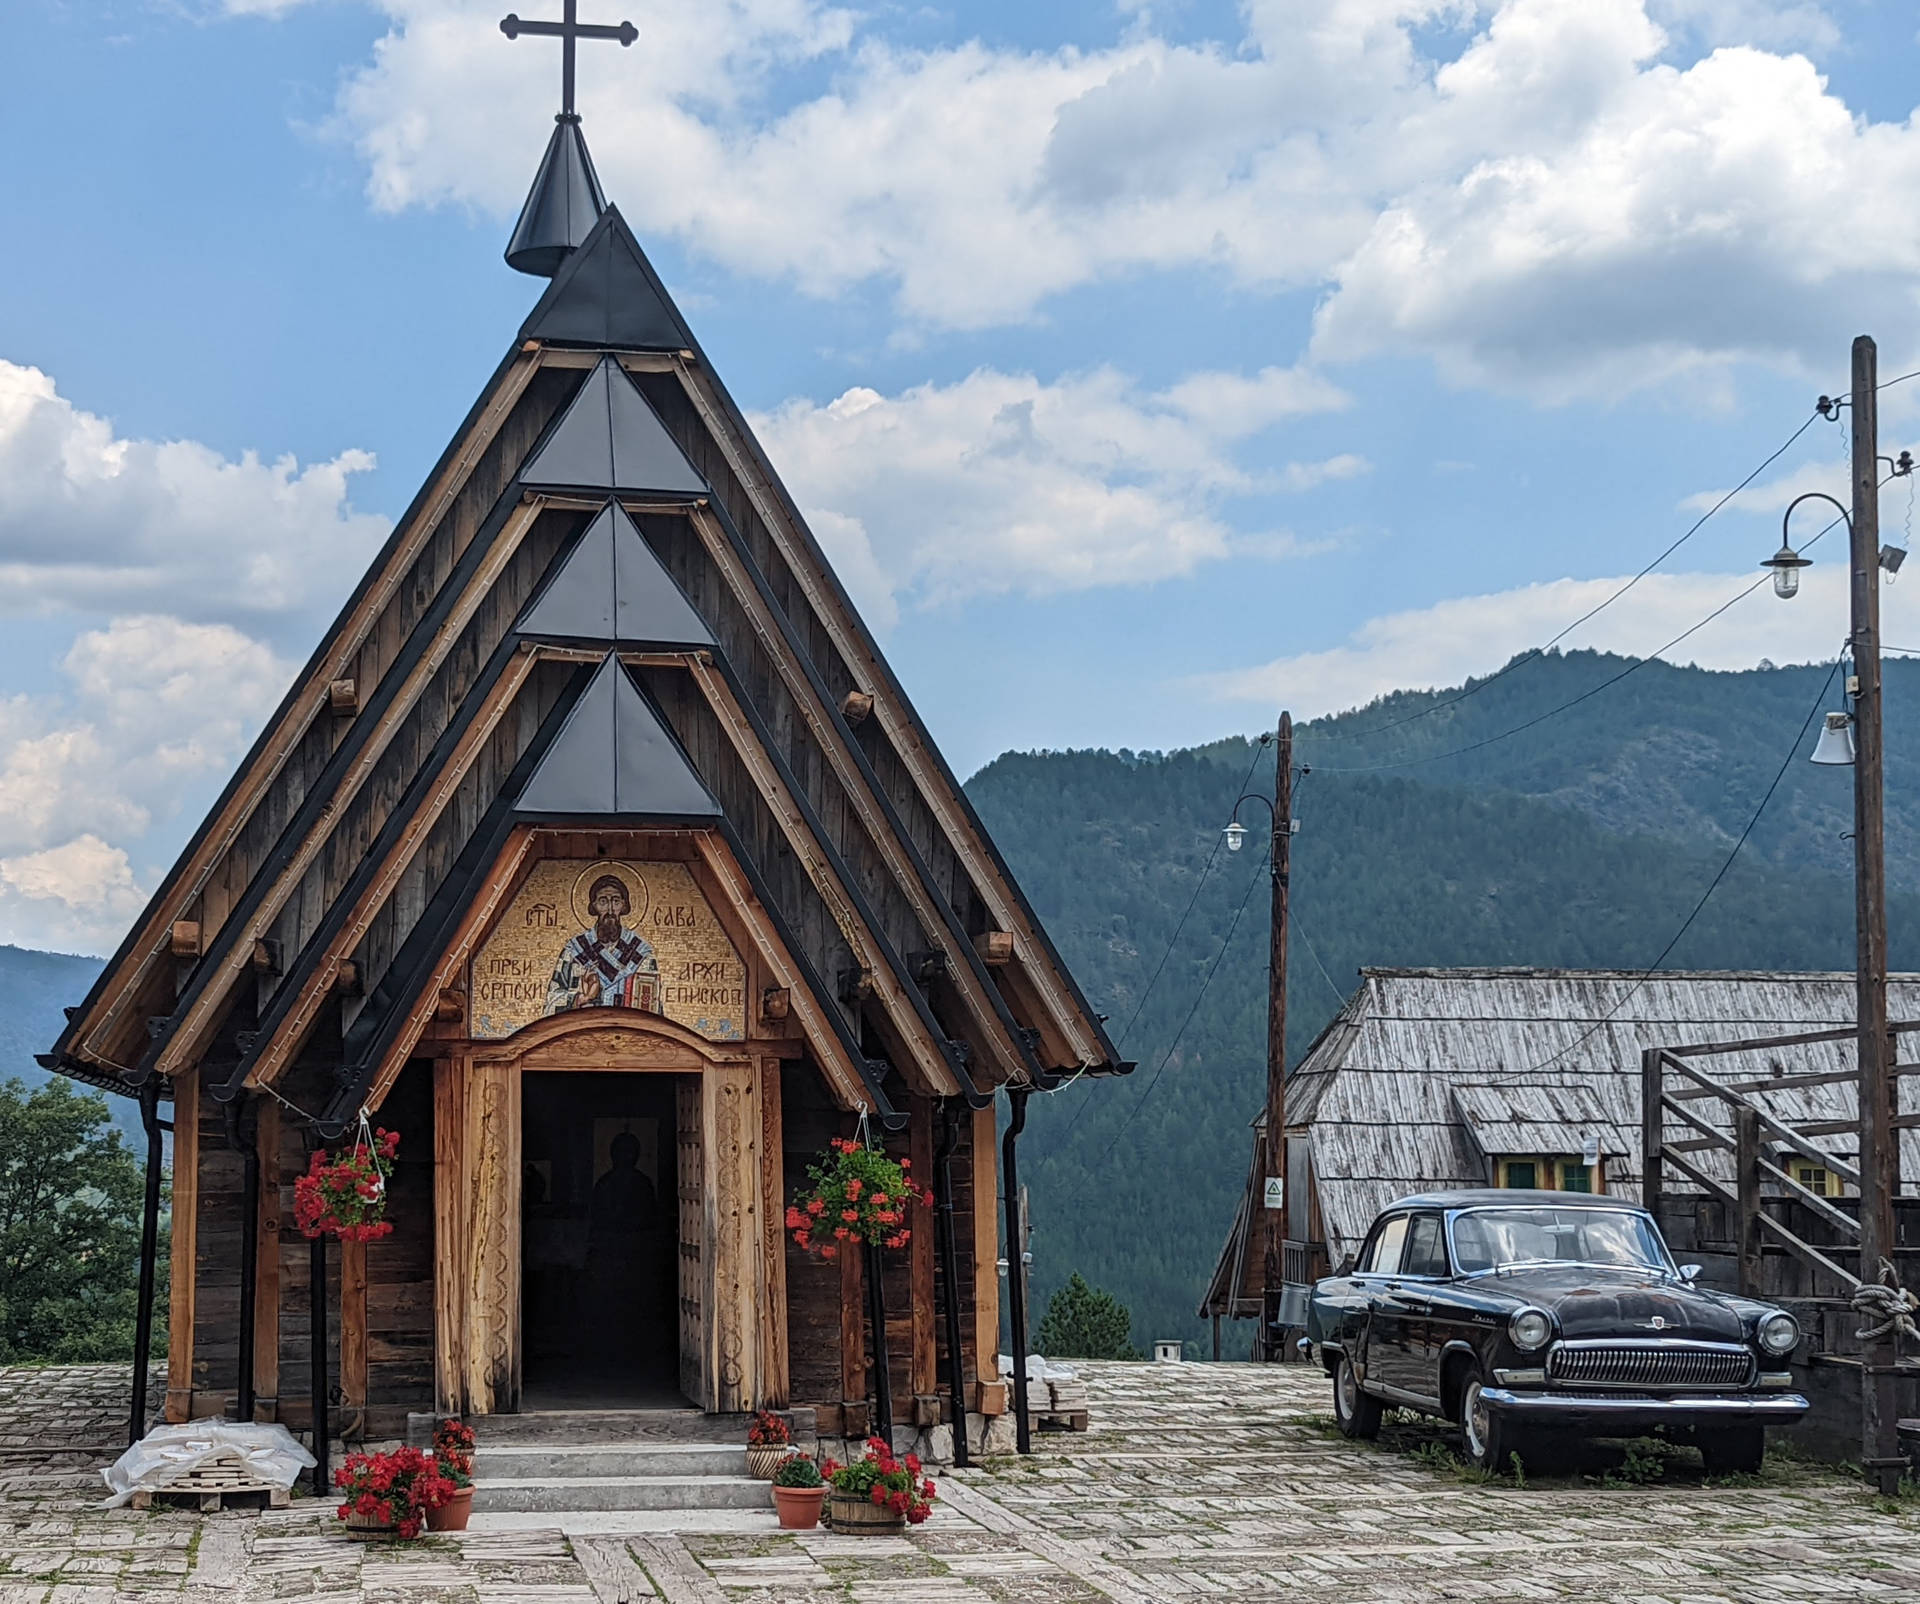 Serbia Wooden Village Background